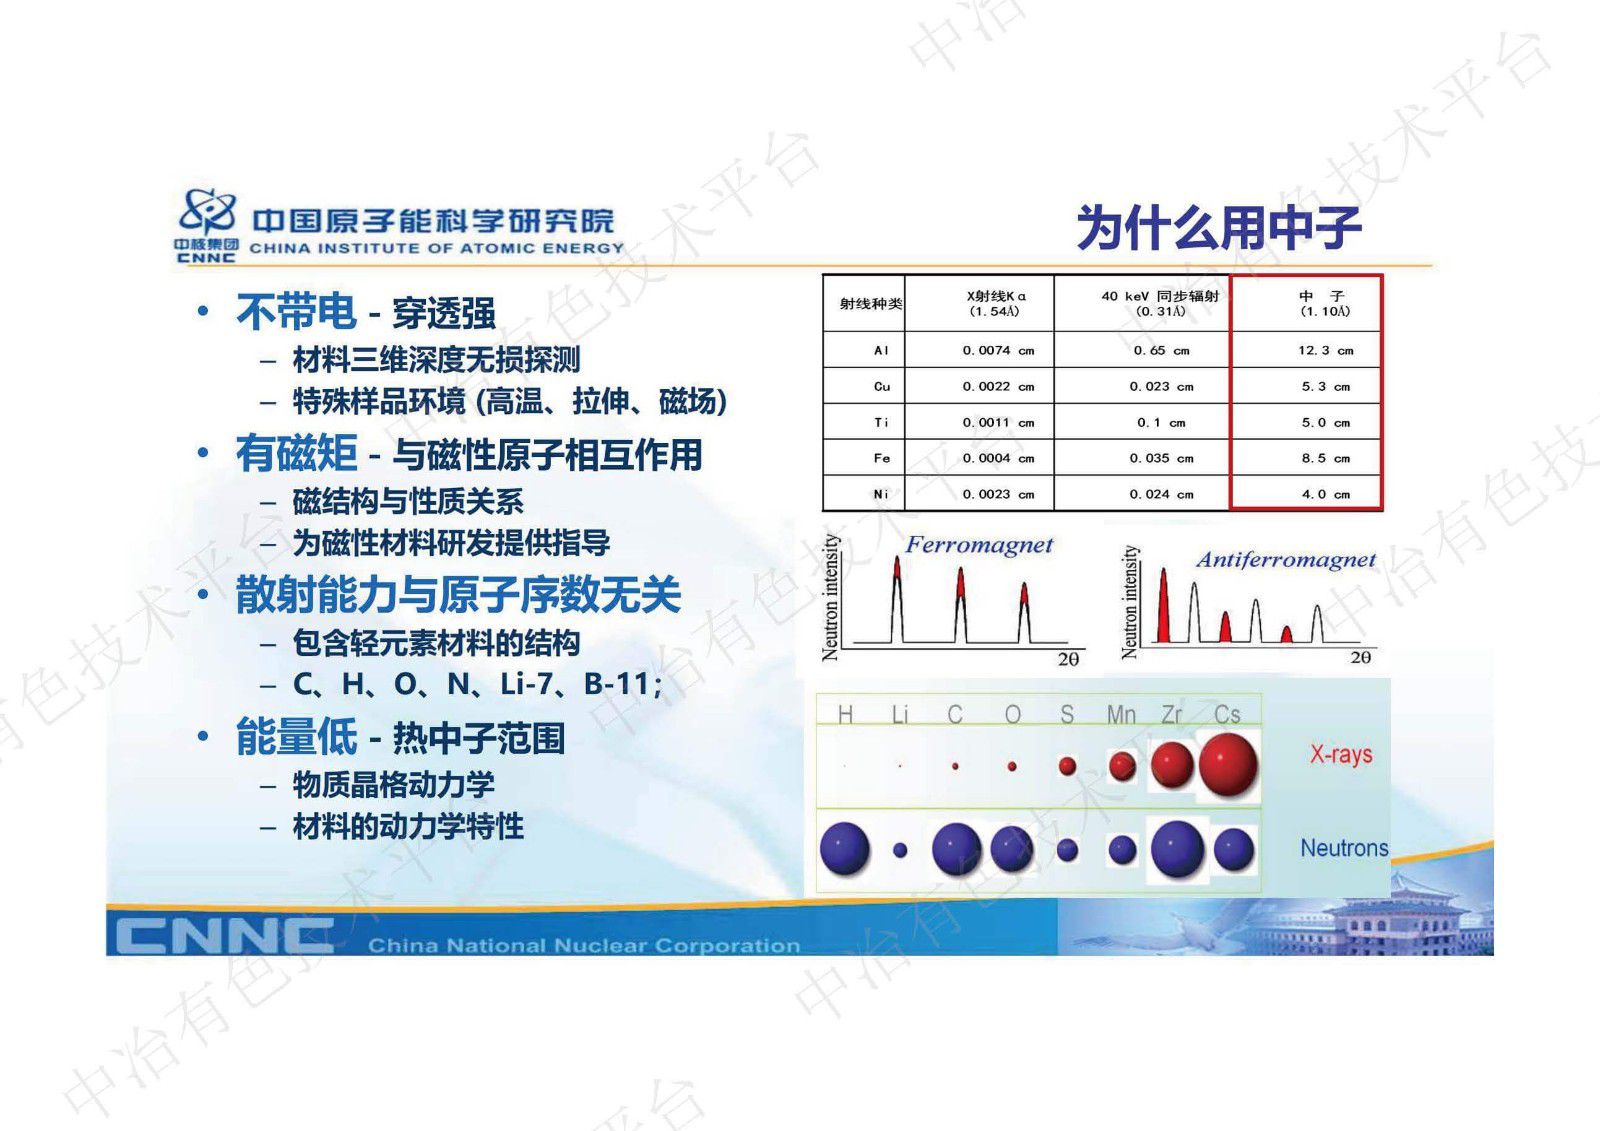 中国先进研究堆中子无损检测平台及其在材料表征中的应用介绍